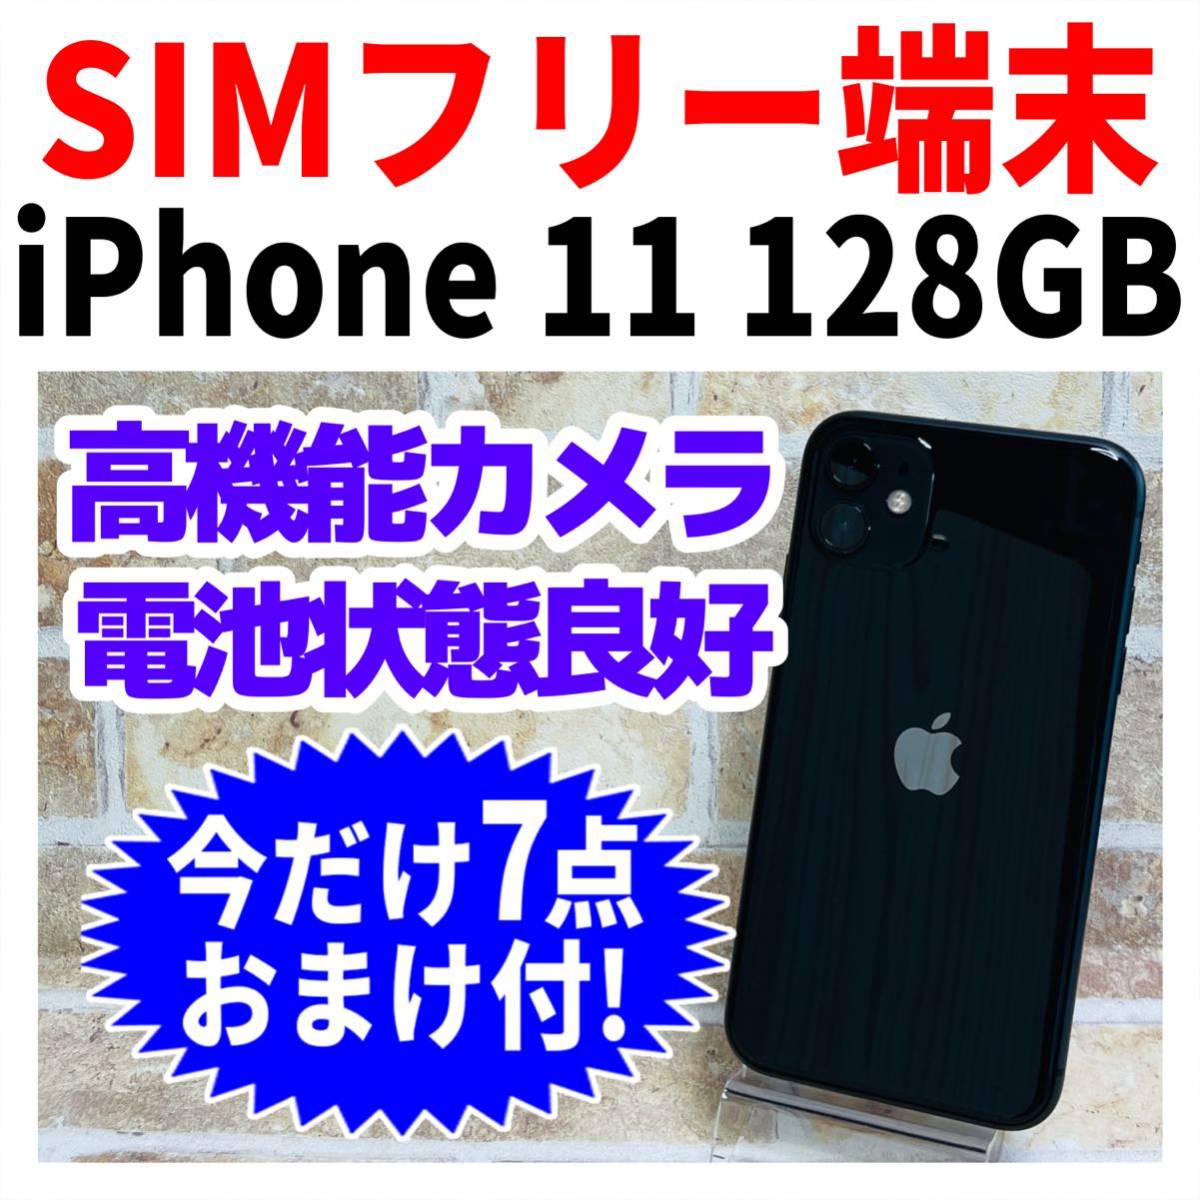 公式日本 iPhone 11 ブラック 128 GB SIMフリー MT4 MT5 スマートフォン本体